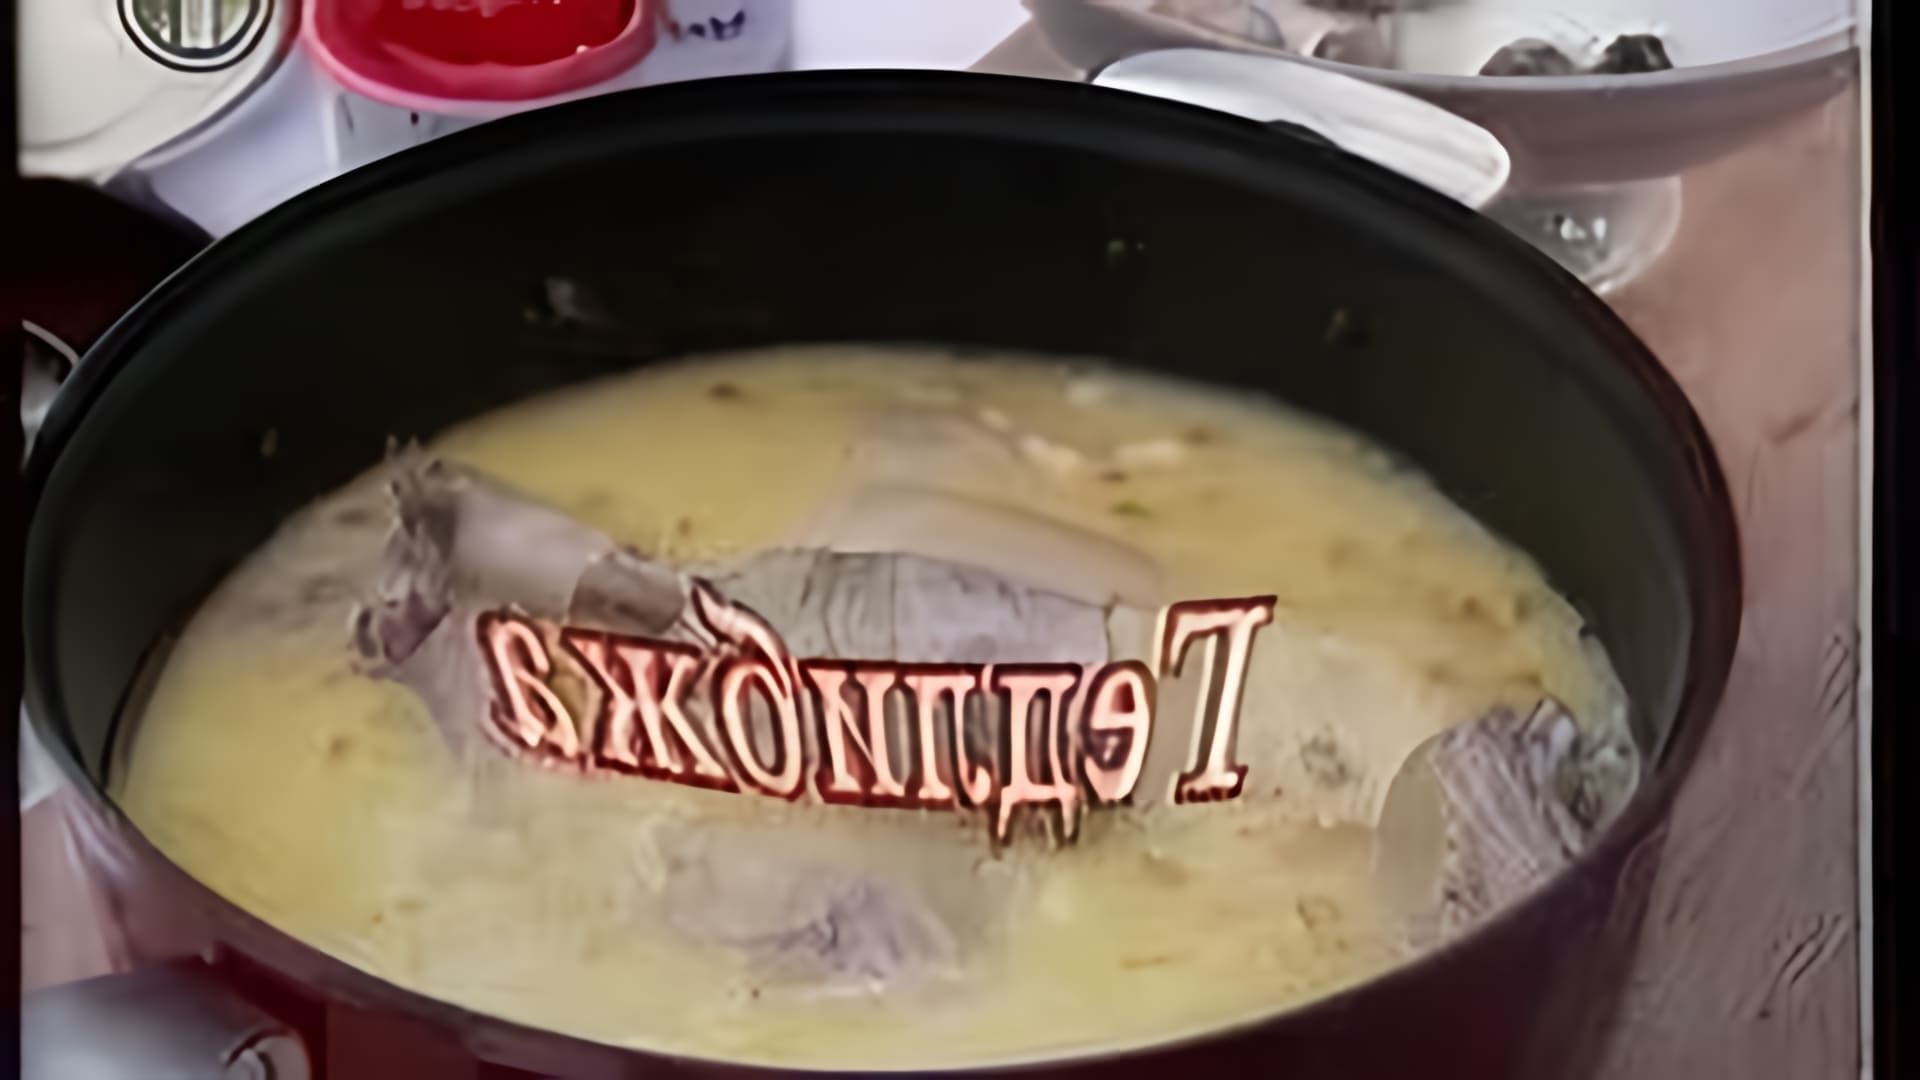 Адыгэ Джэд Лыбжьэ / Circassian Chicken - это видео-ролик, который представляет собой рецепт приготовления адыгской курицы